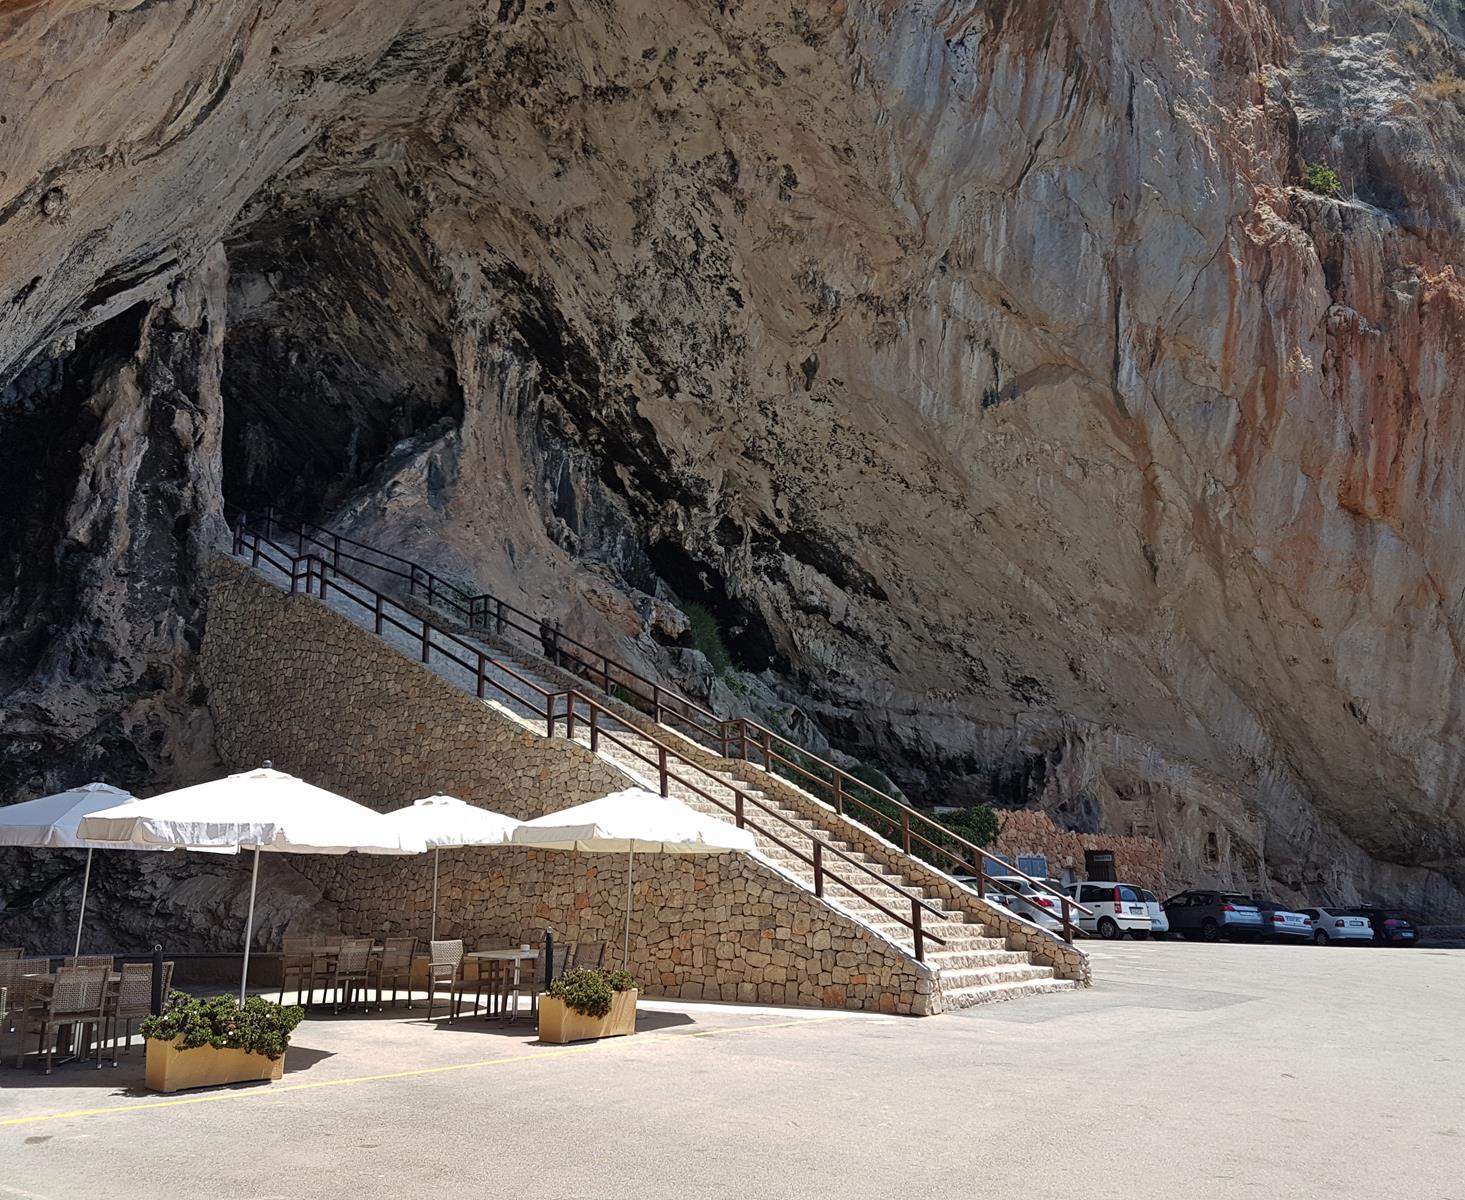 cuevas de arta entrance